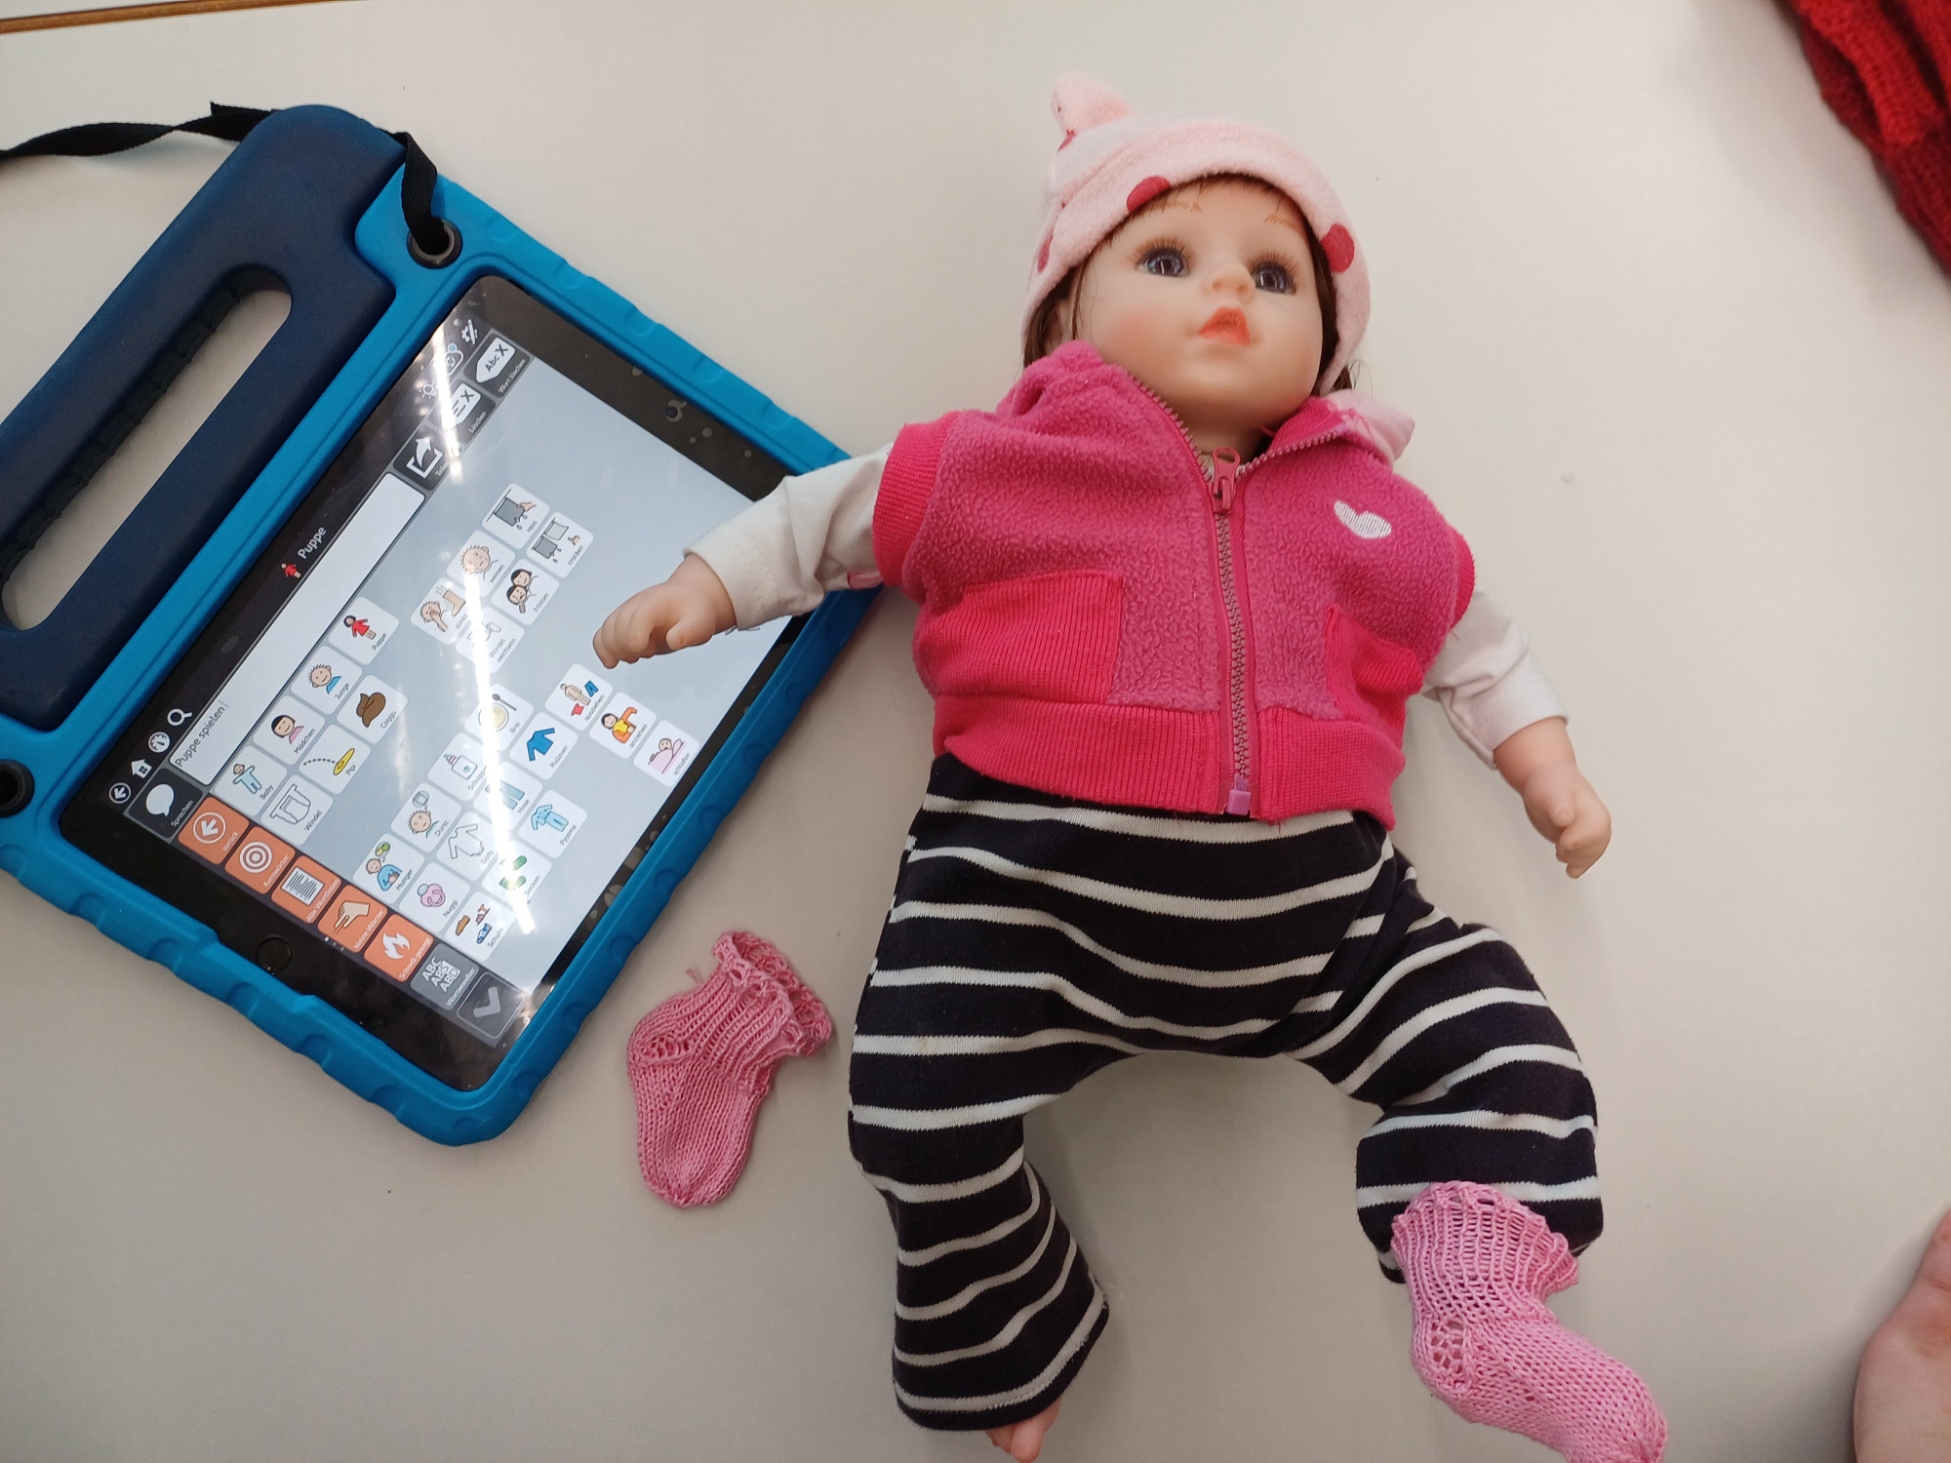 Spielen und Kommunikation mit der Puppe